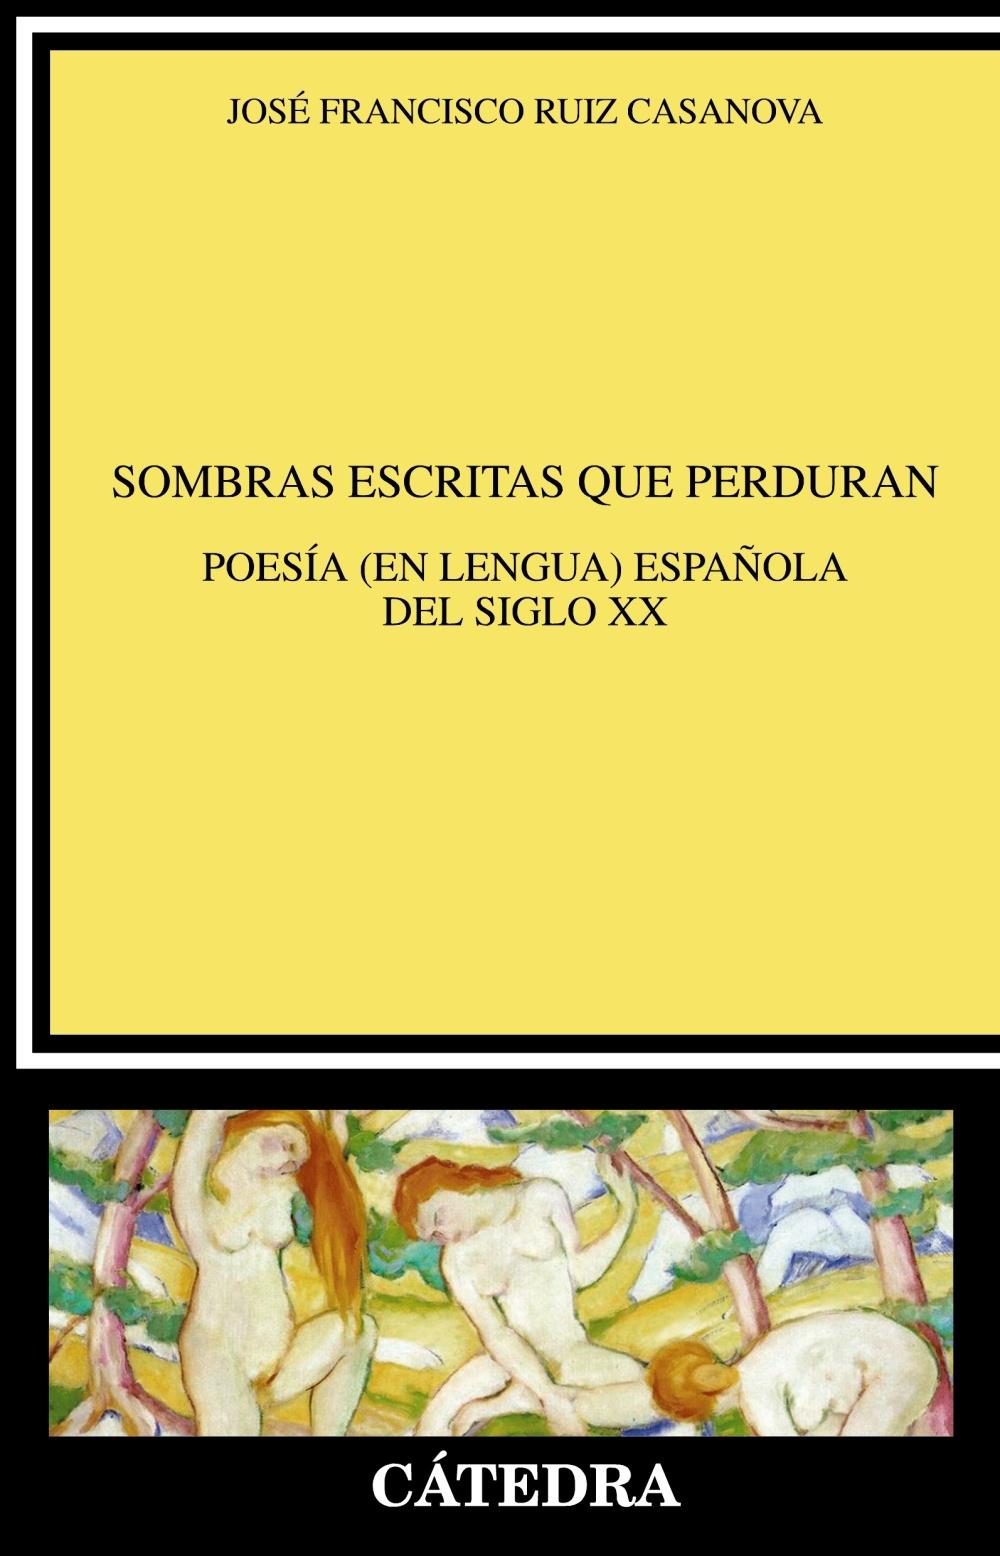 Sombras Escritas que Perduran "Poesía (En Lengua) Española del Siglo Xx"